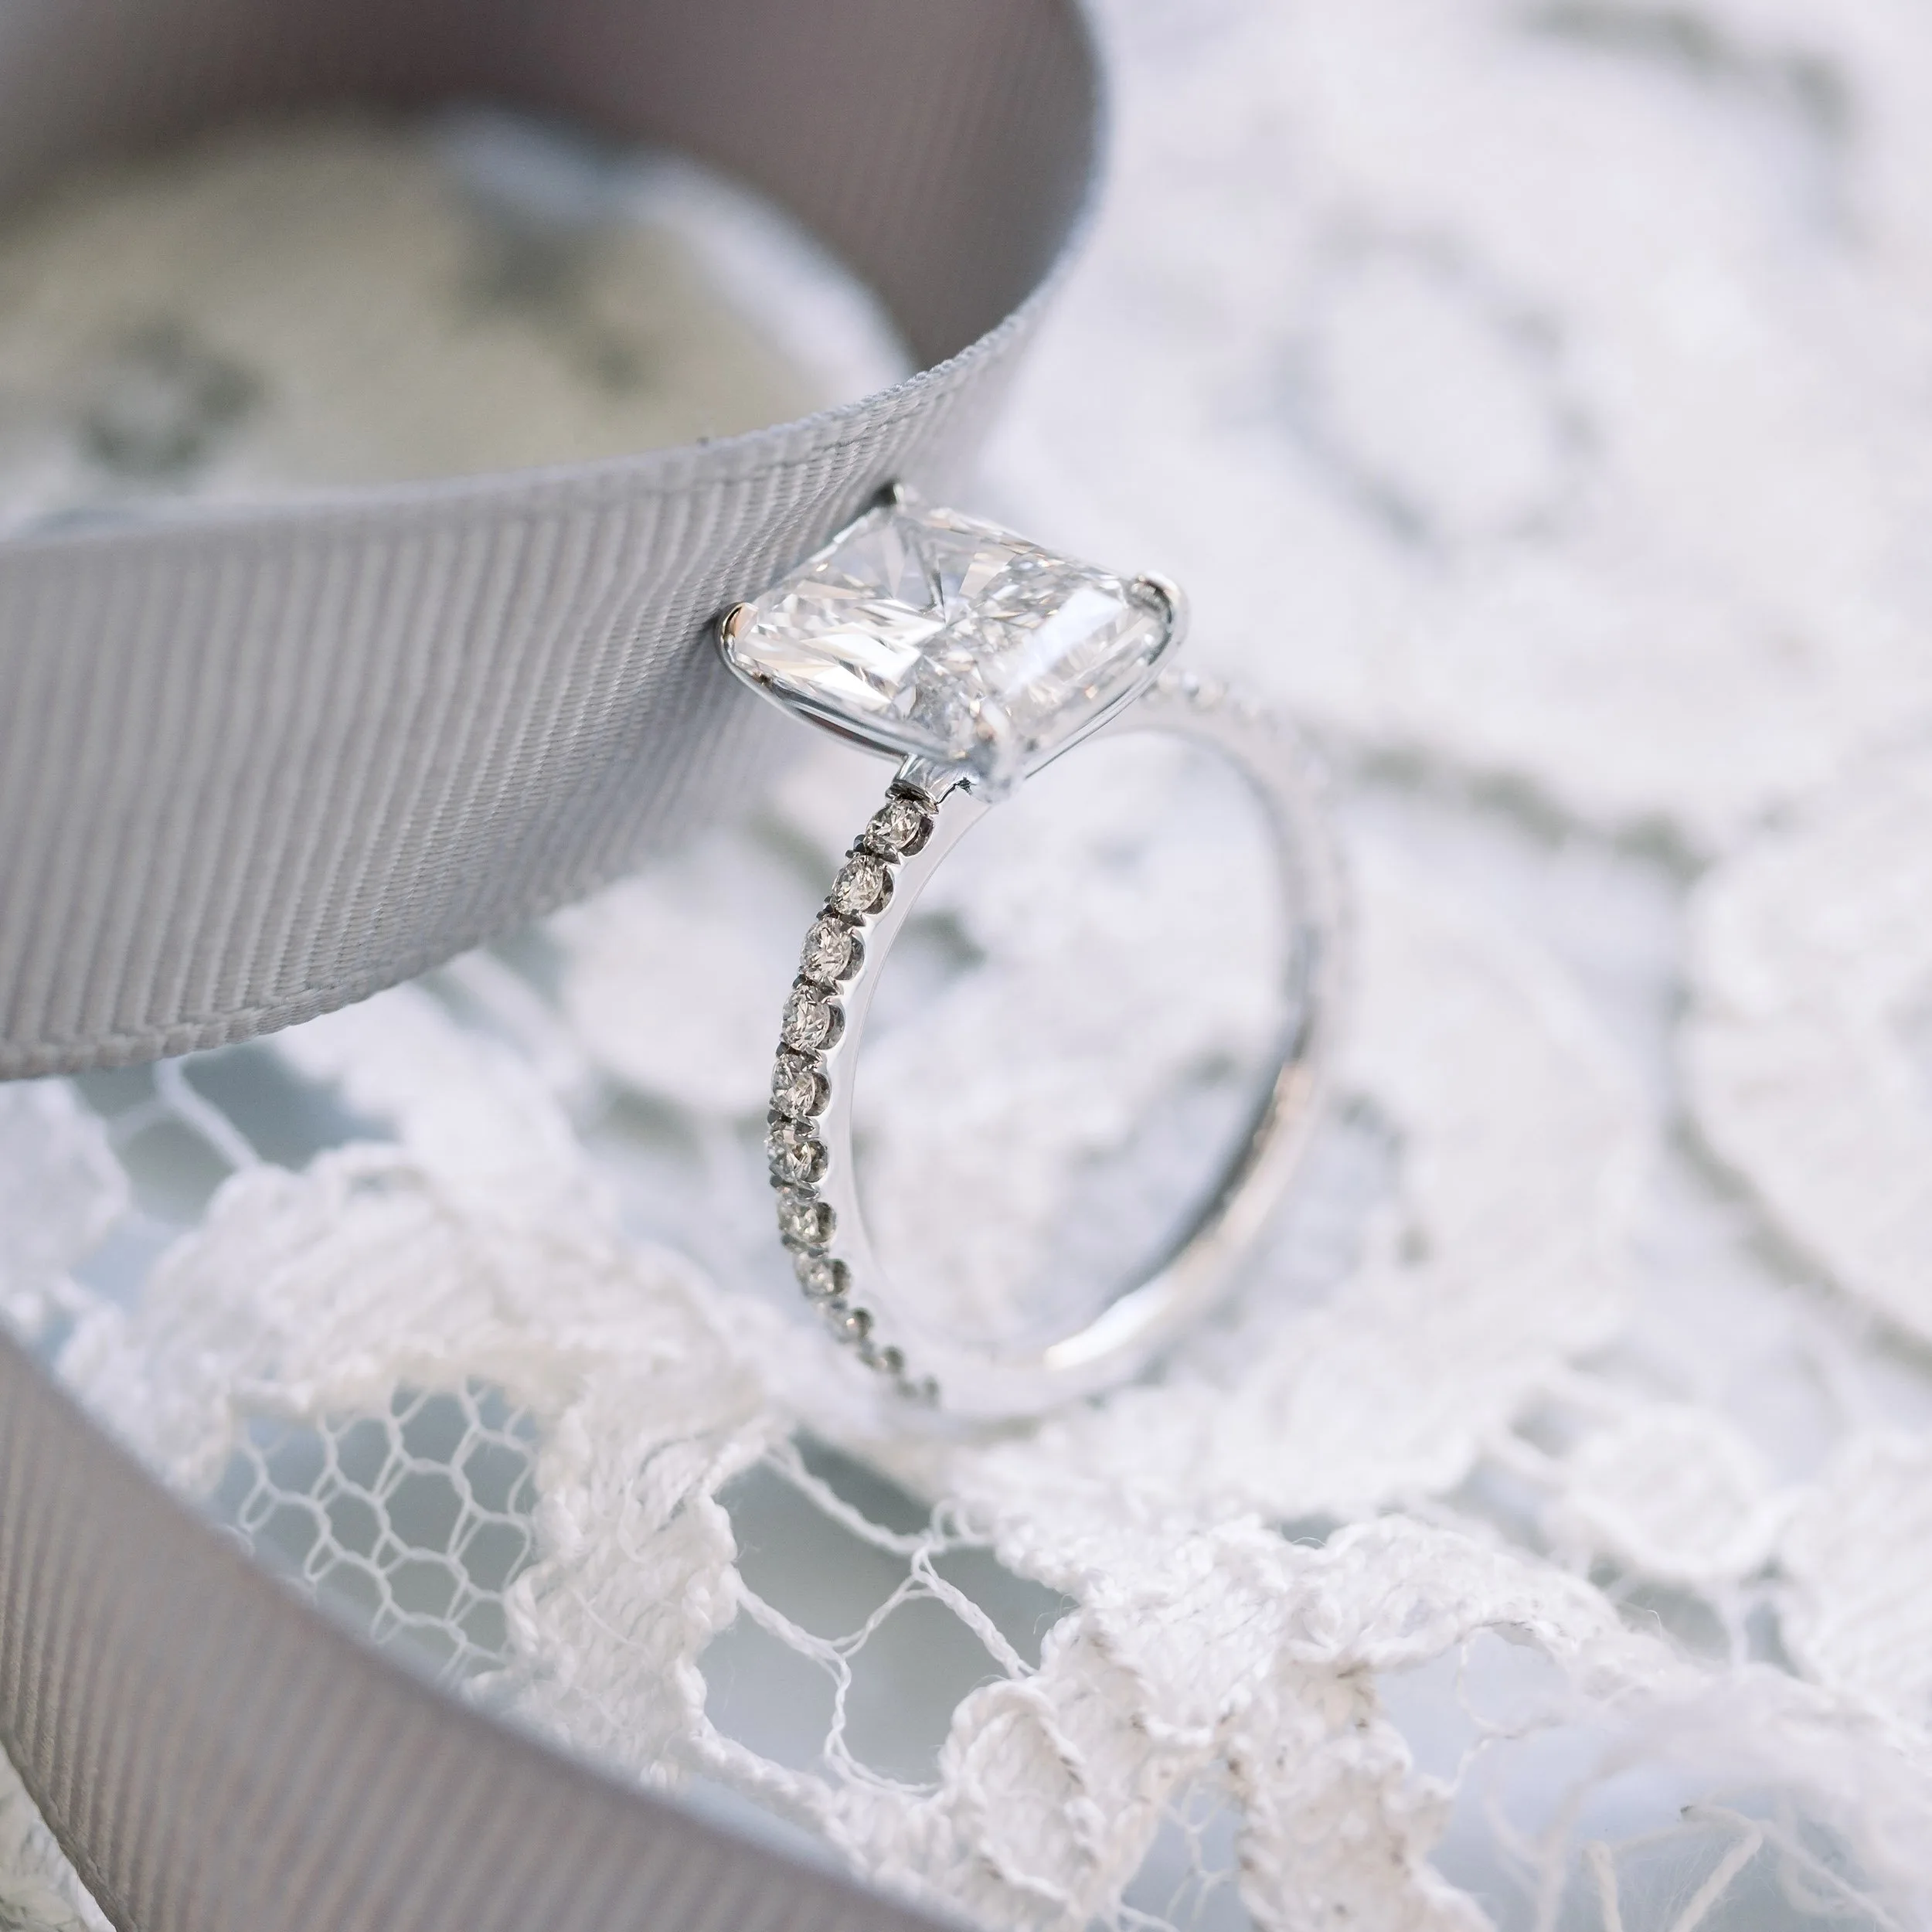 radiant lab diamond engagement ring in platinum